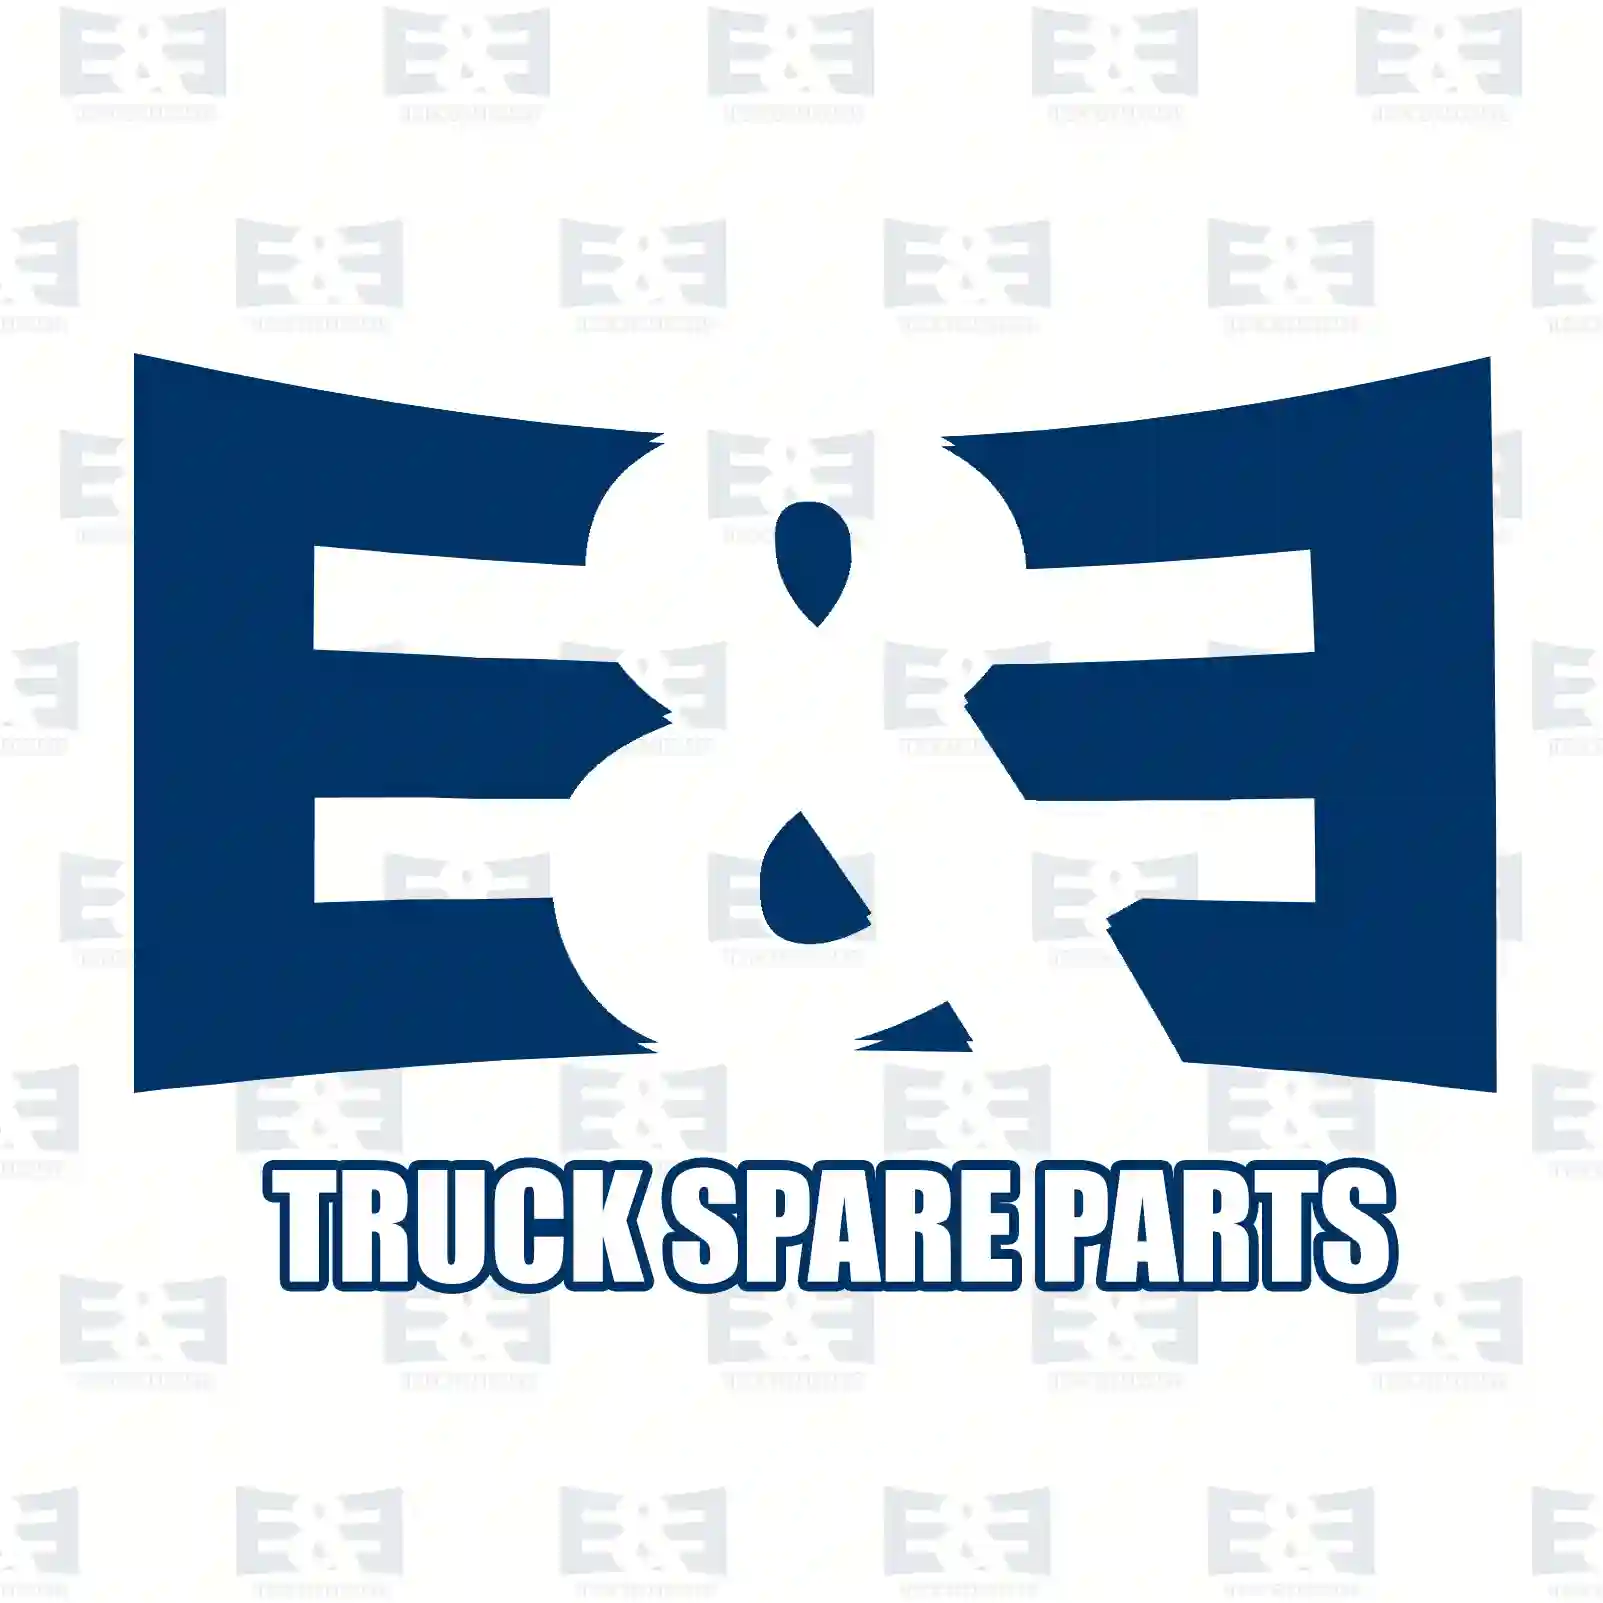 Power-take-off, 2E2279493, 81381006640, 81381006771, 81381009771 ||  2E2279493 E&E Truck Spare Parts | Truck Spare Parts, Auotomotive Spare Parts Power-take-off, 2E2279493, 81381006640, 81381006771, 81381009771 ||  2E2279493 E&E Truck Spare Parts | Truck Spare Parts, Auotomotive Spare Parts